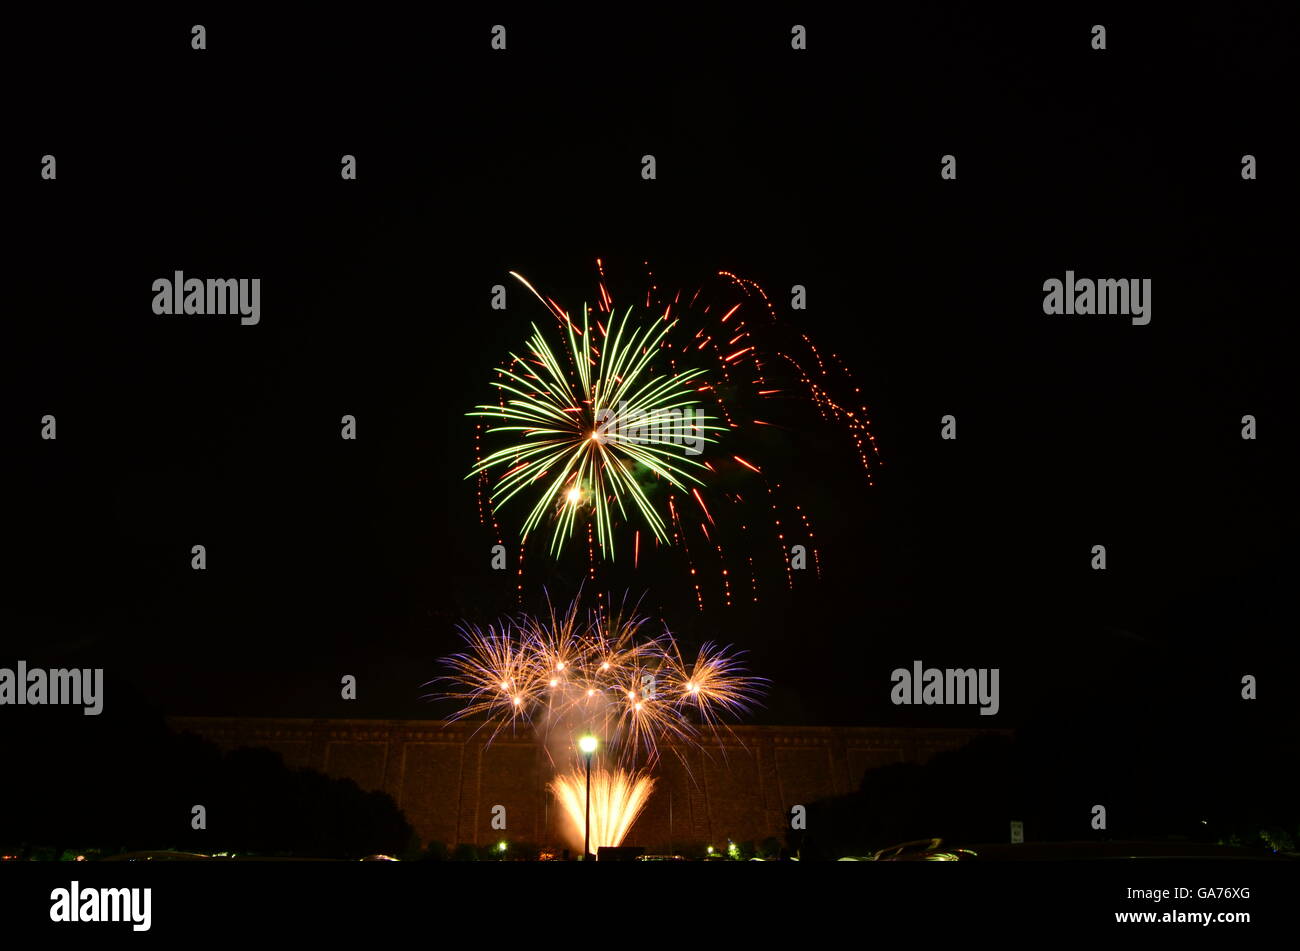 Presa Kensico anual de fuegos artificiales por el día de la independencia en Valhalla, NY Foto de stock